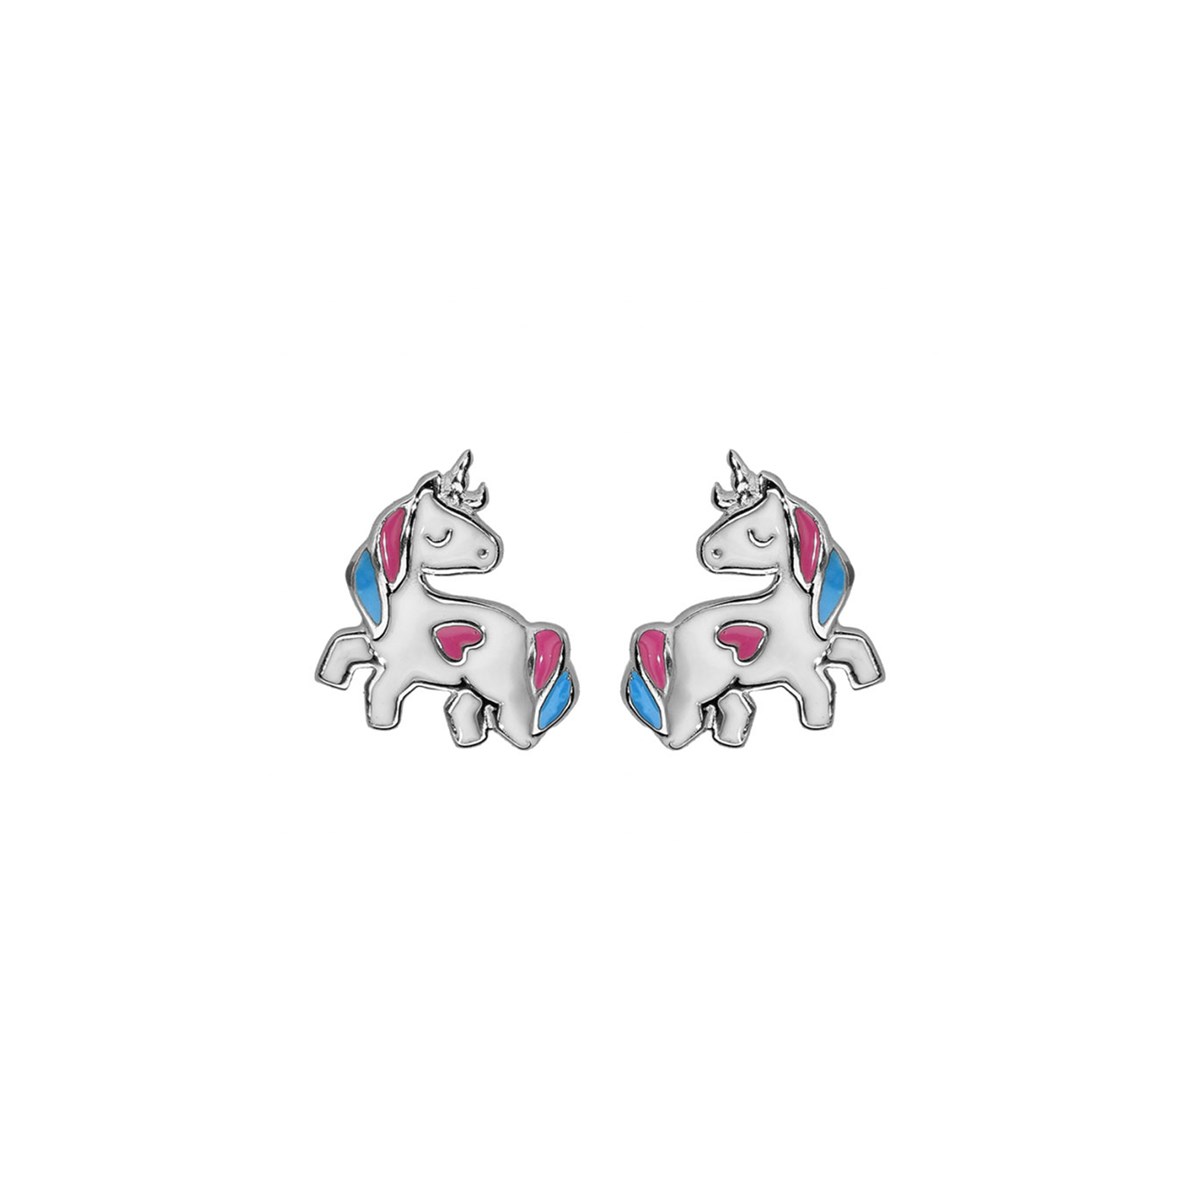 Boucles d'oreilles licornes - Argent